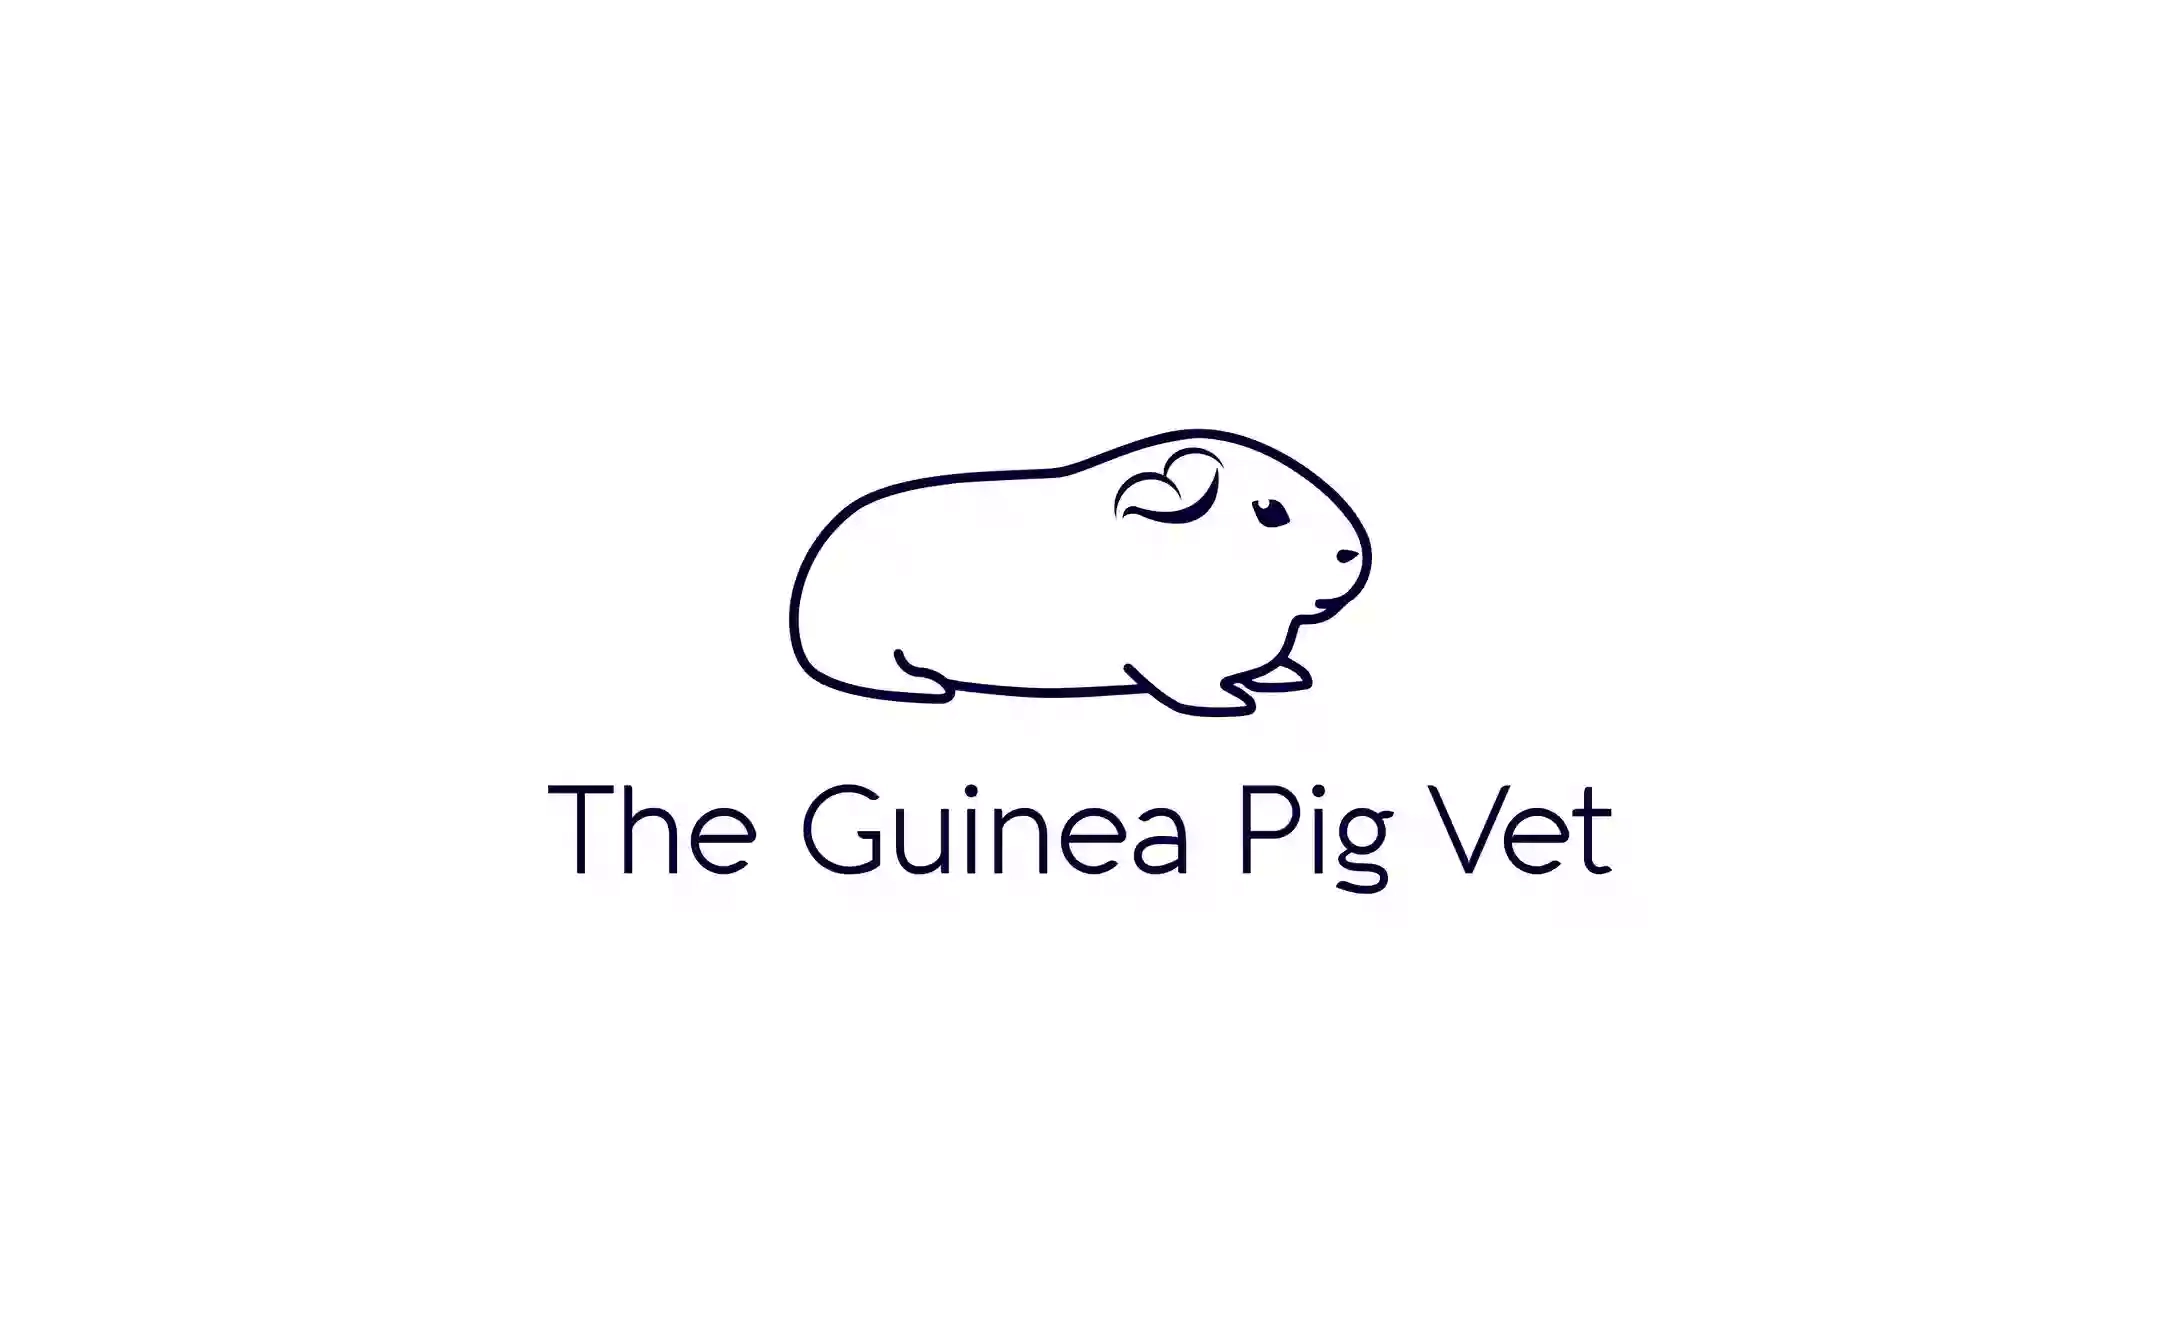 The Guinea Pig Vet